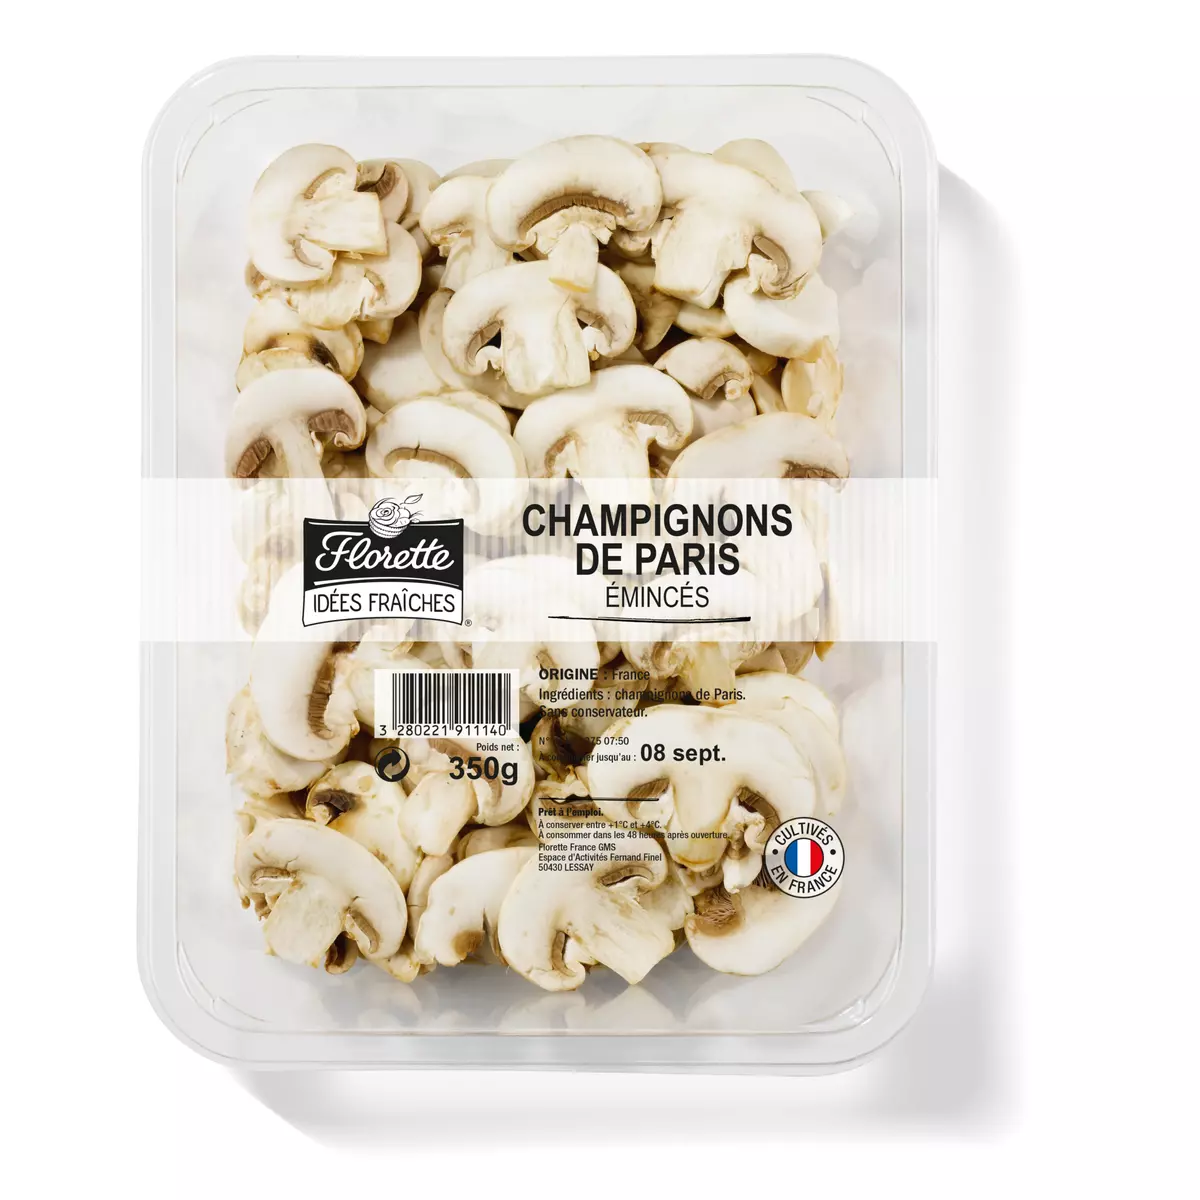 FLORETTE Champignons de Paris émincés 350g